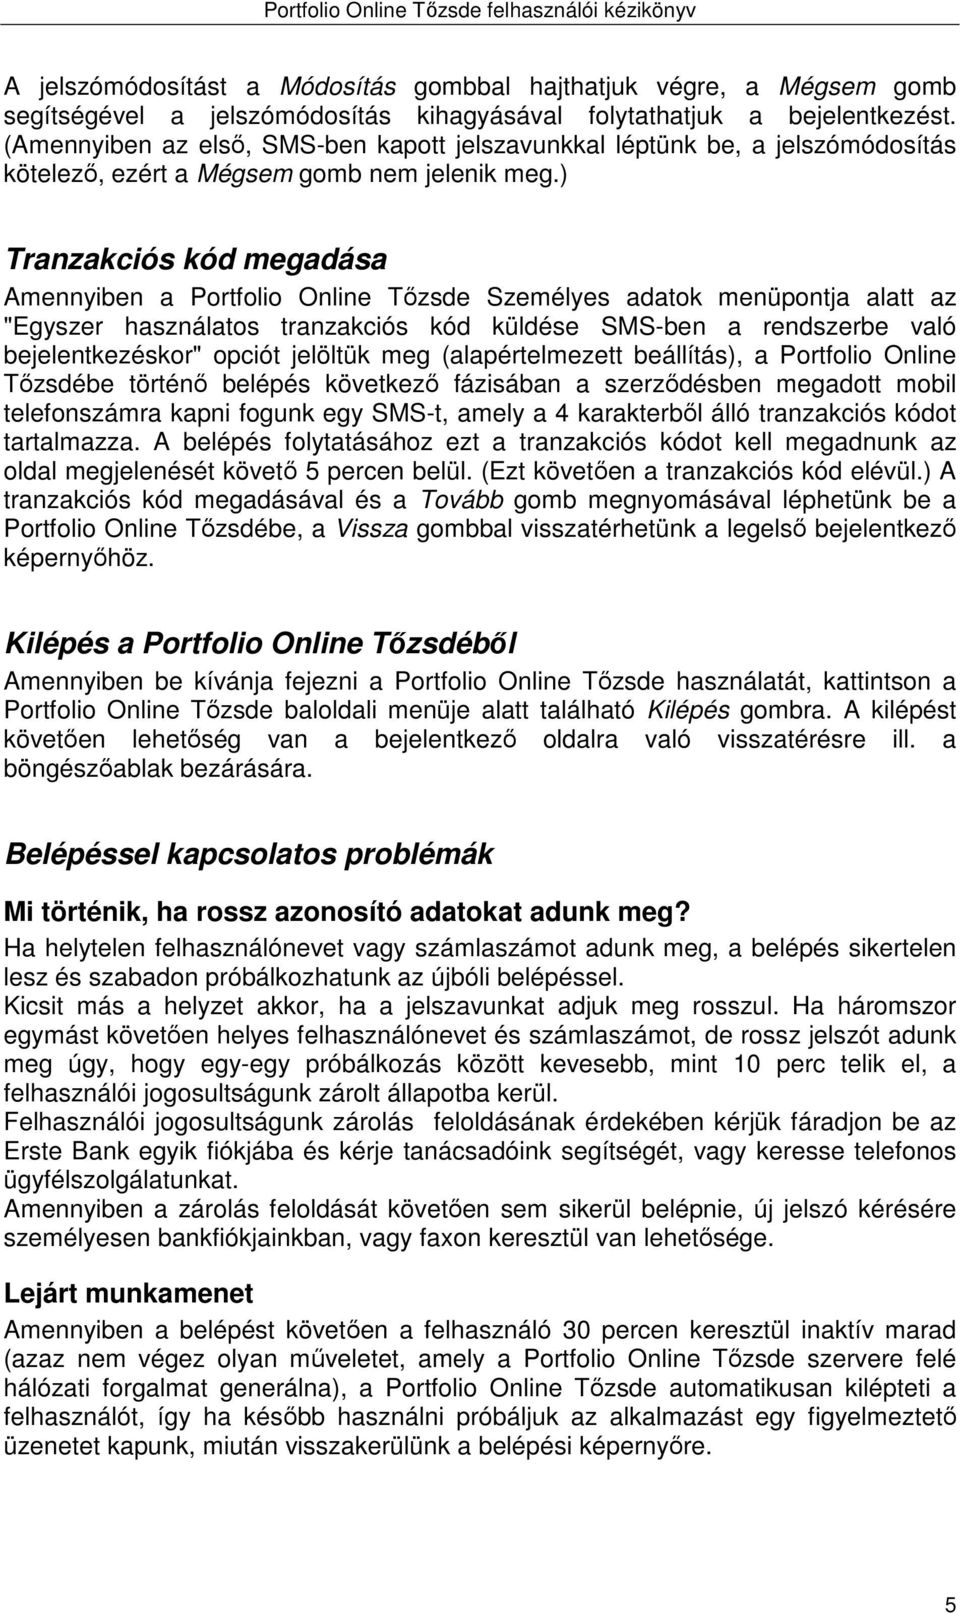 Portfolio Online Tőzsde. Felhasználói kézikönyv - PDF Ingyenes letöltés